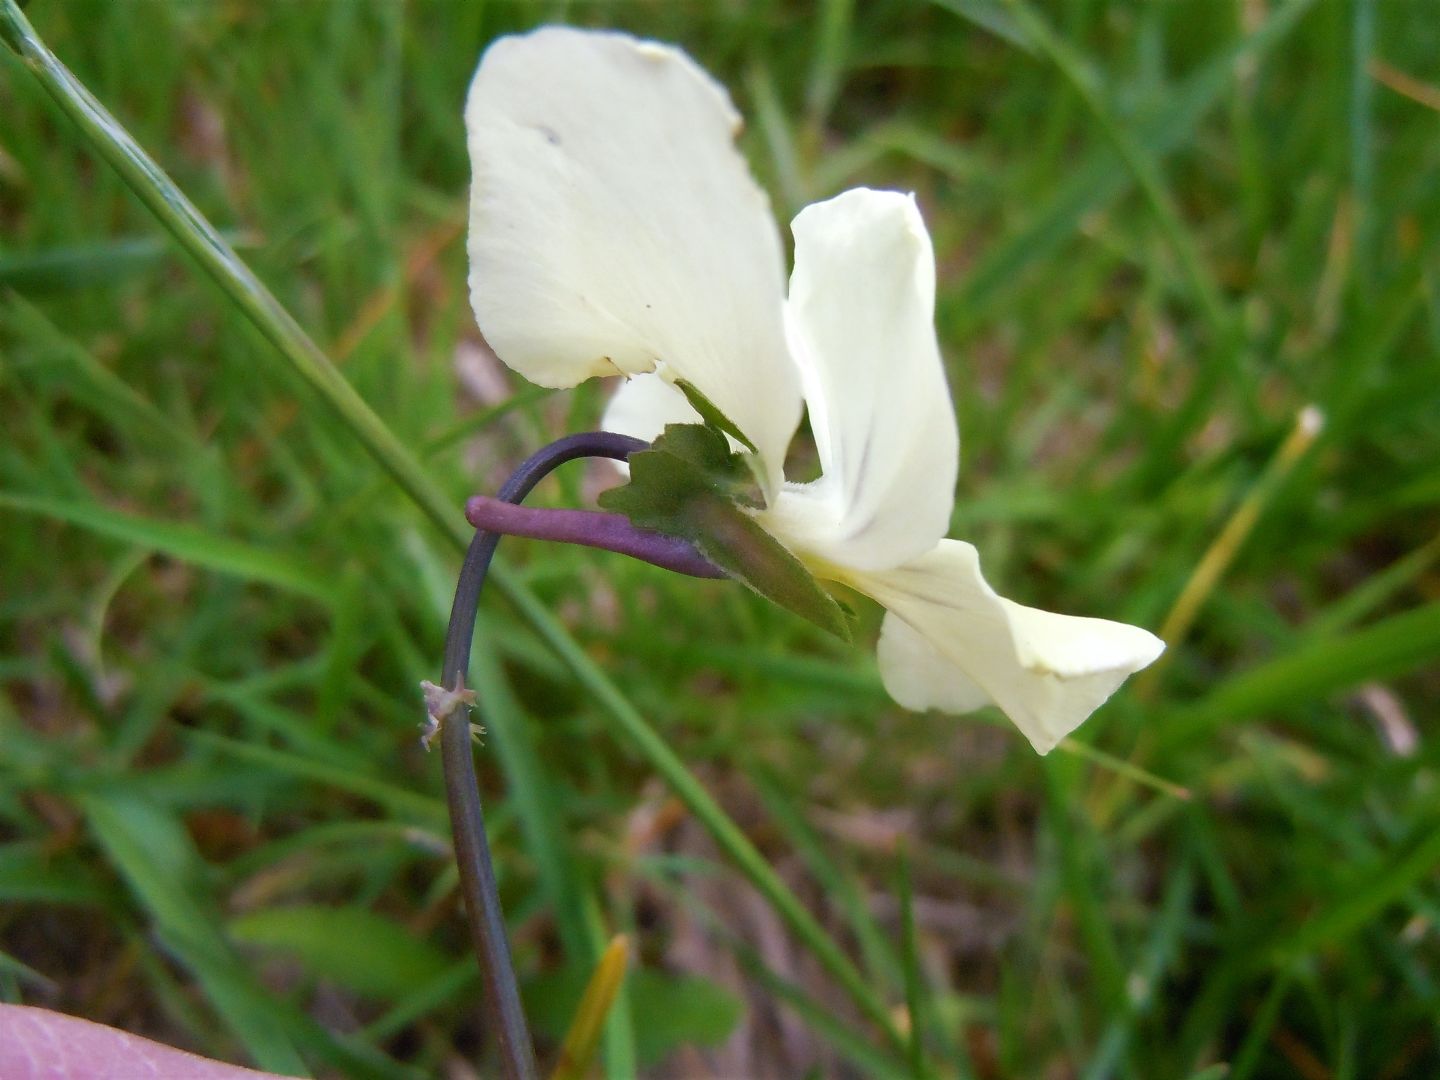 Viola etrusca?...No, Viola sp.